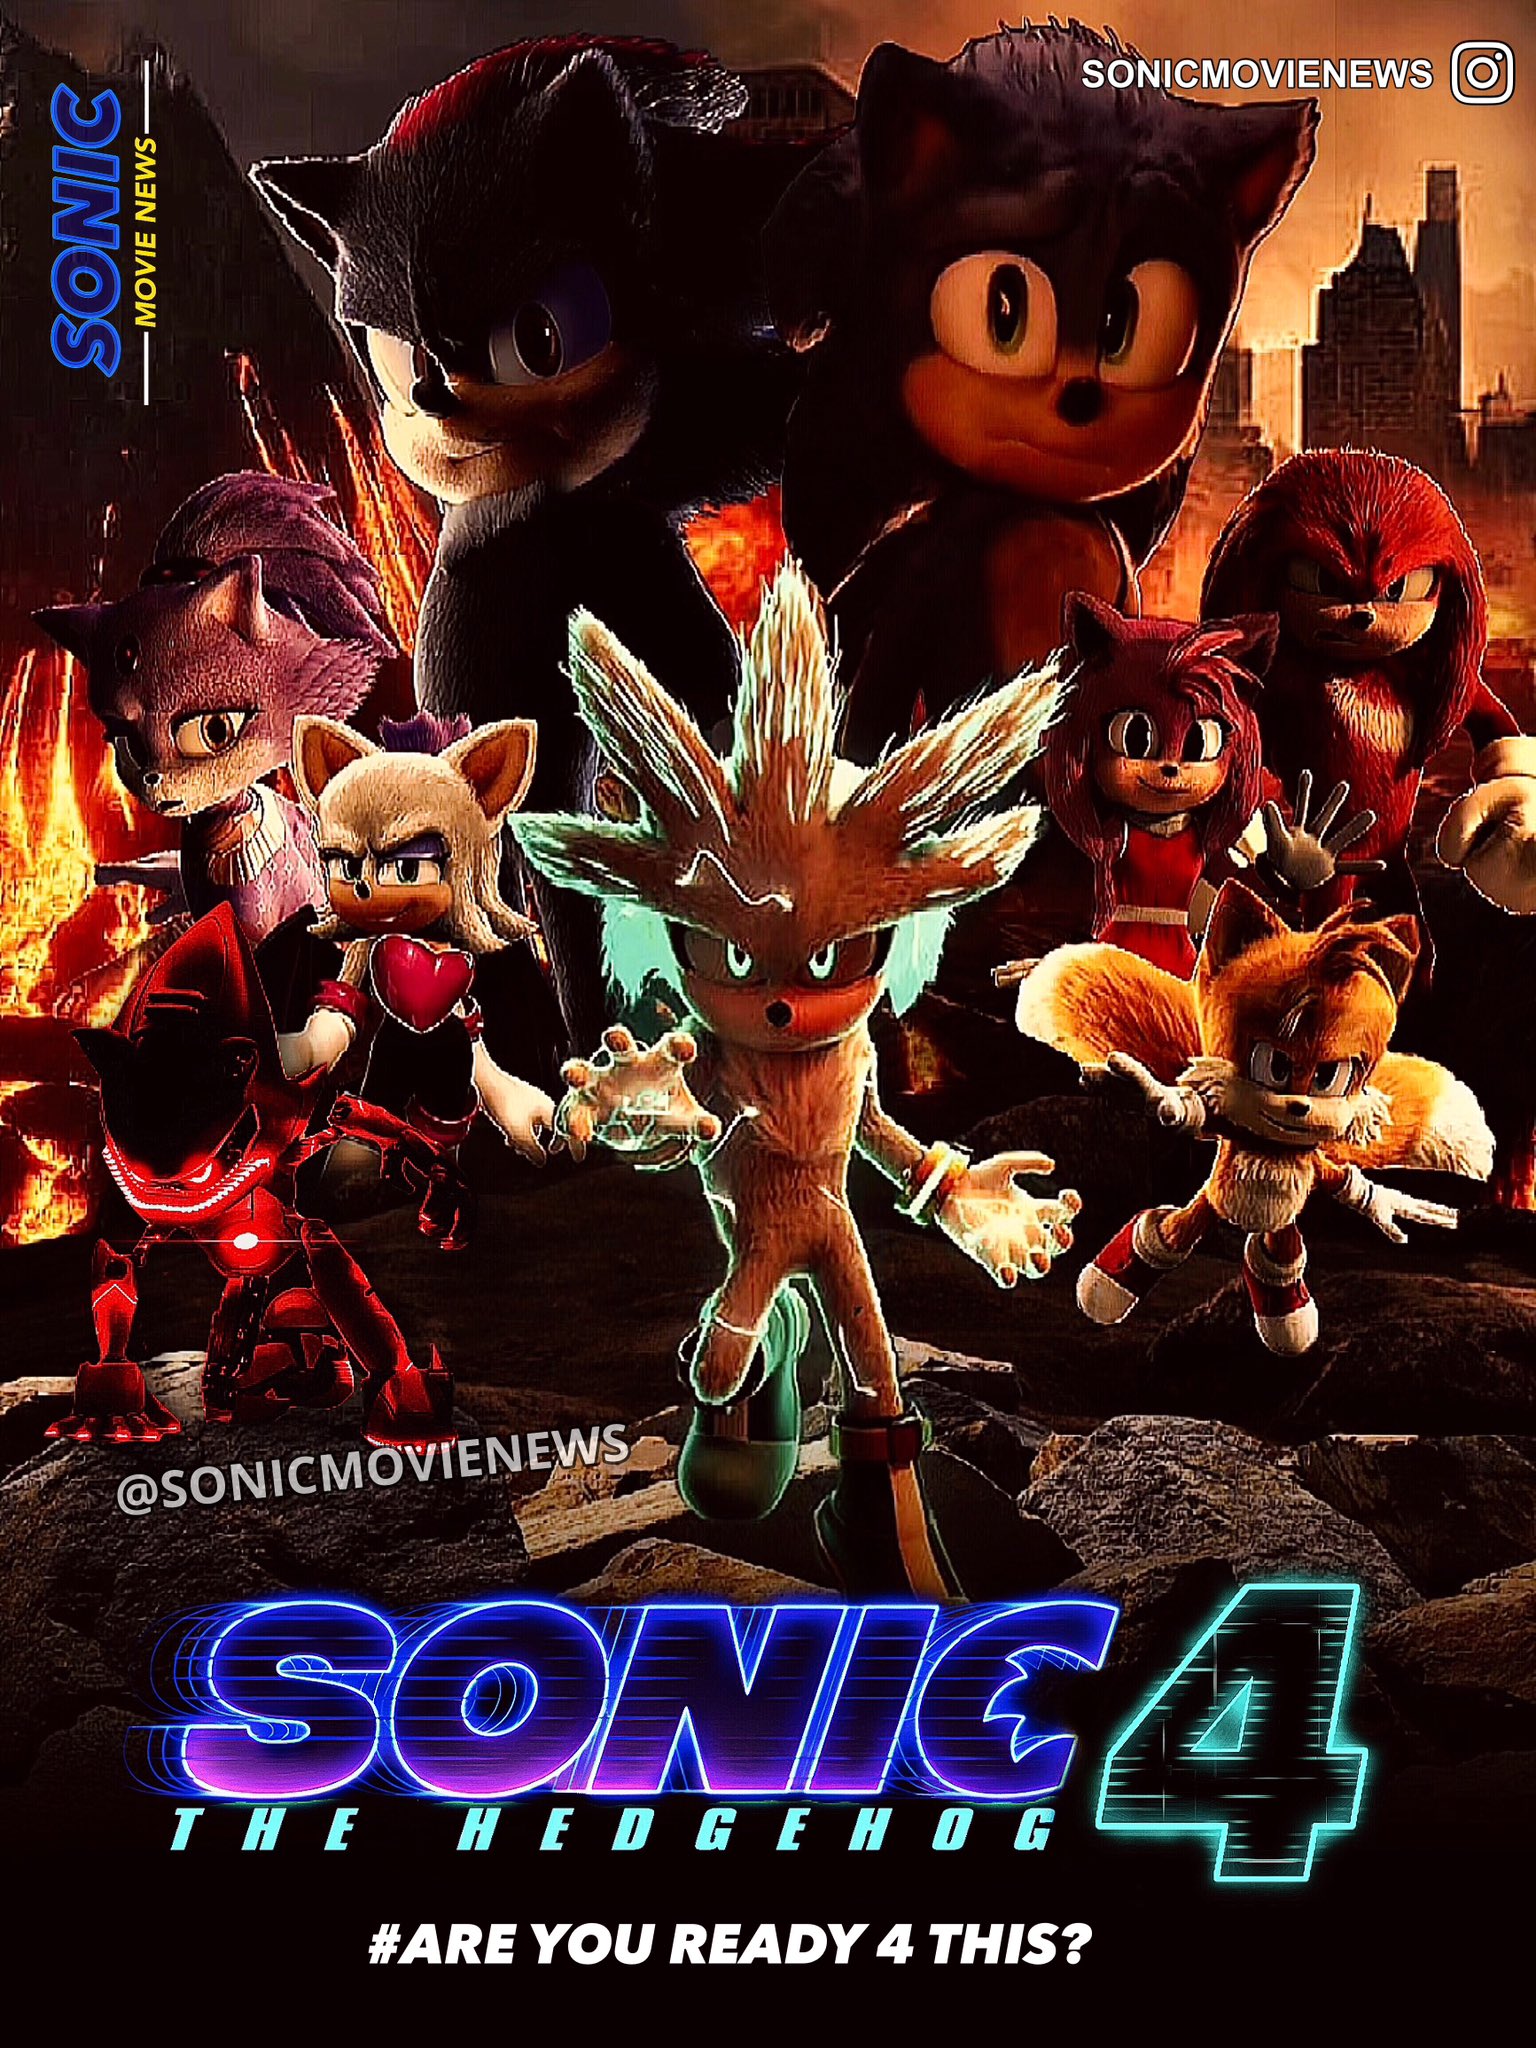 Sonic movienews (@Sonimovienews) / X